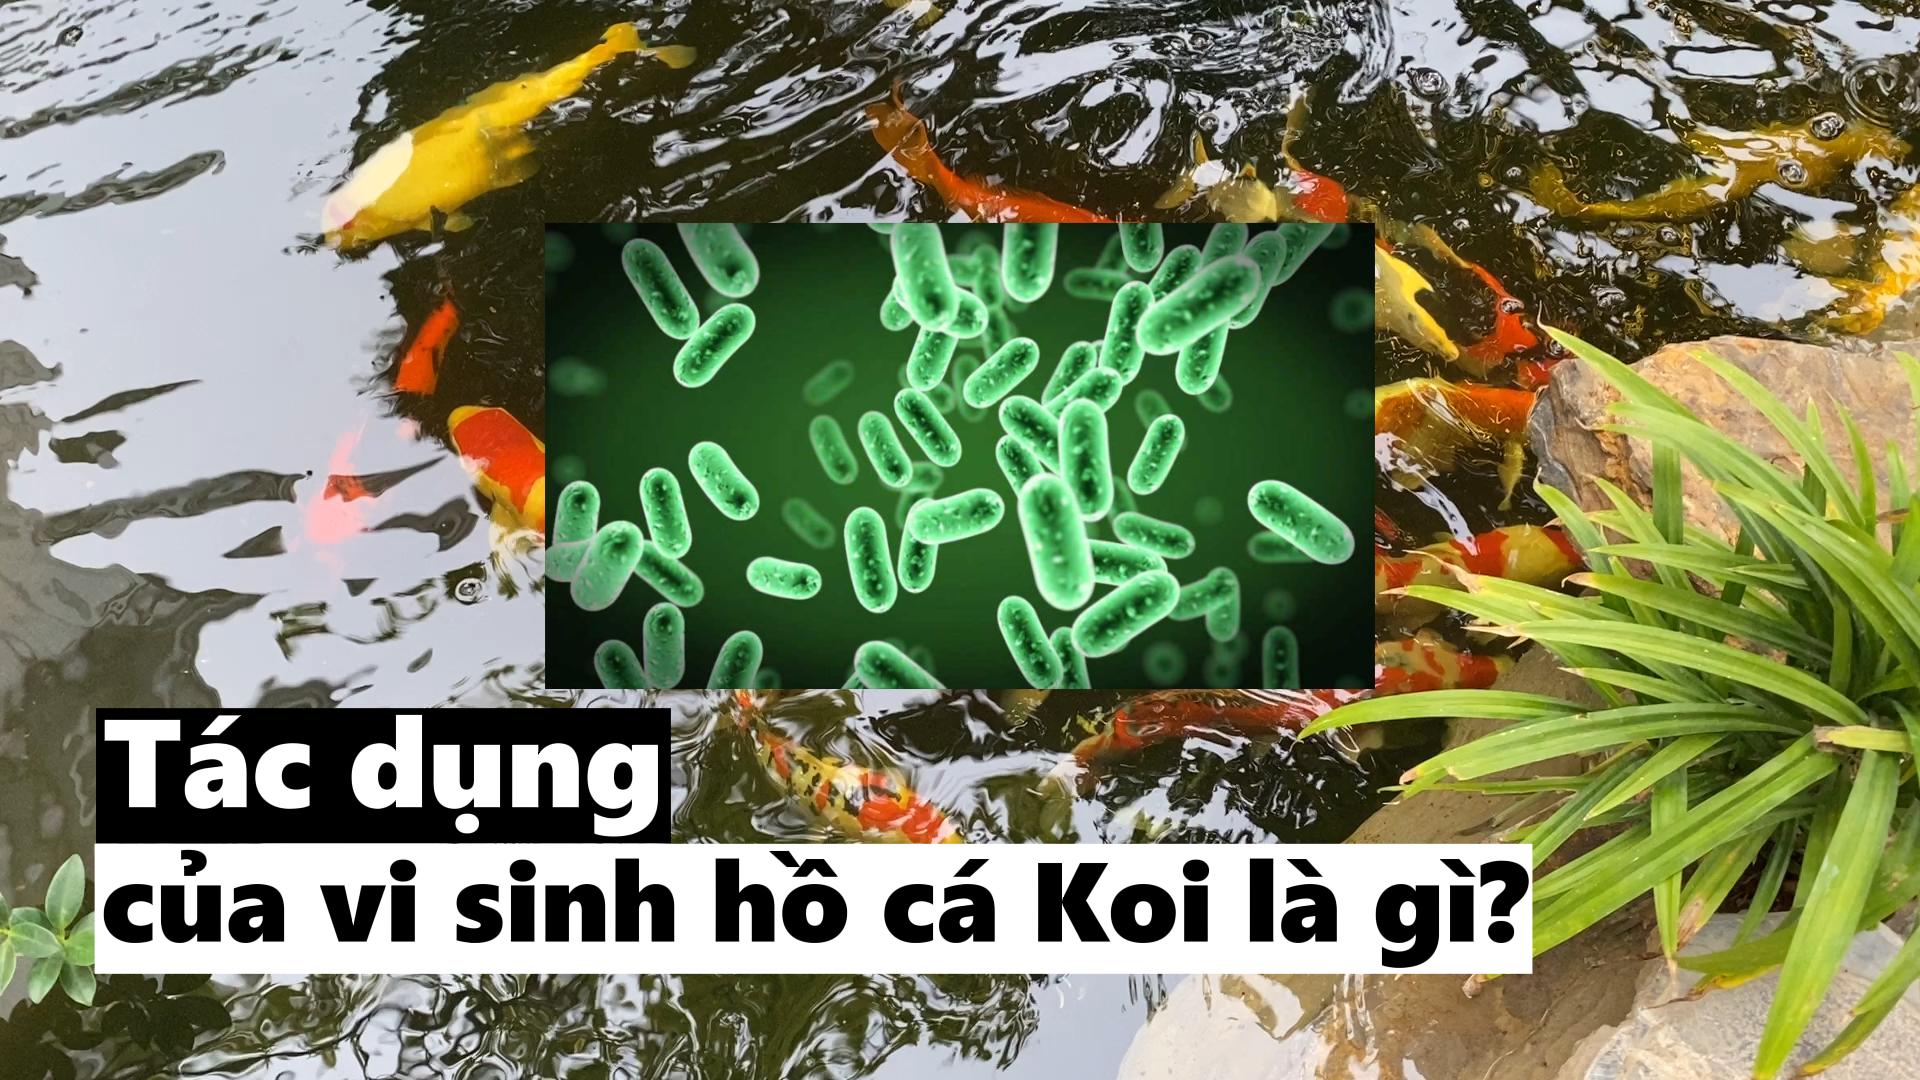 Tác dụng của vi sinh trong hồ cá Koi là gì? Vì sao phải châm vi sinh cho hồ cá Koi?